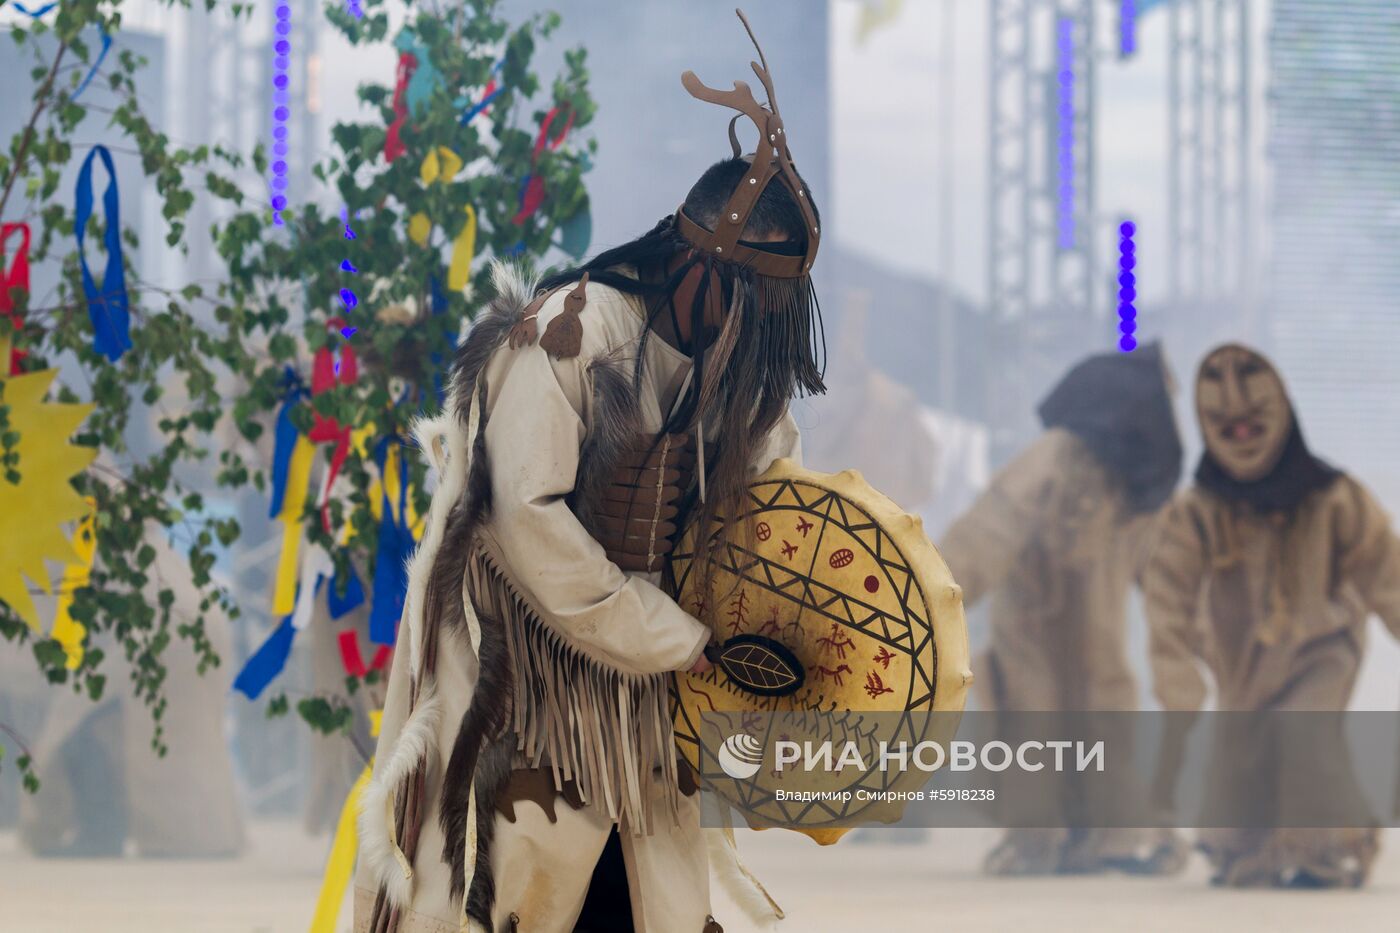 Международный этнокультурный фестиваль "Ёрдынские игры – Игры народов Евразии"